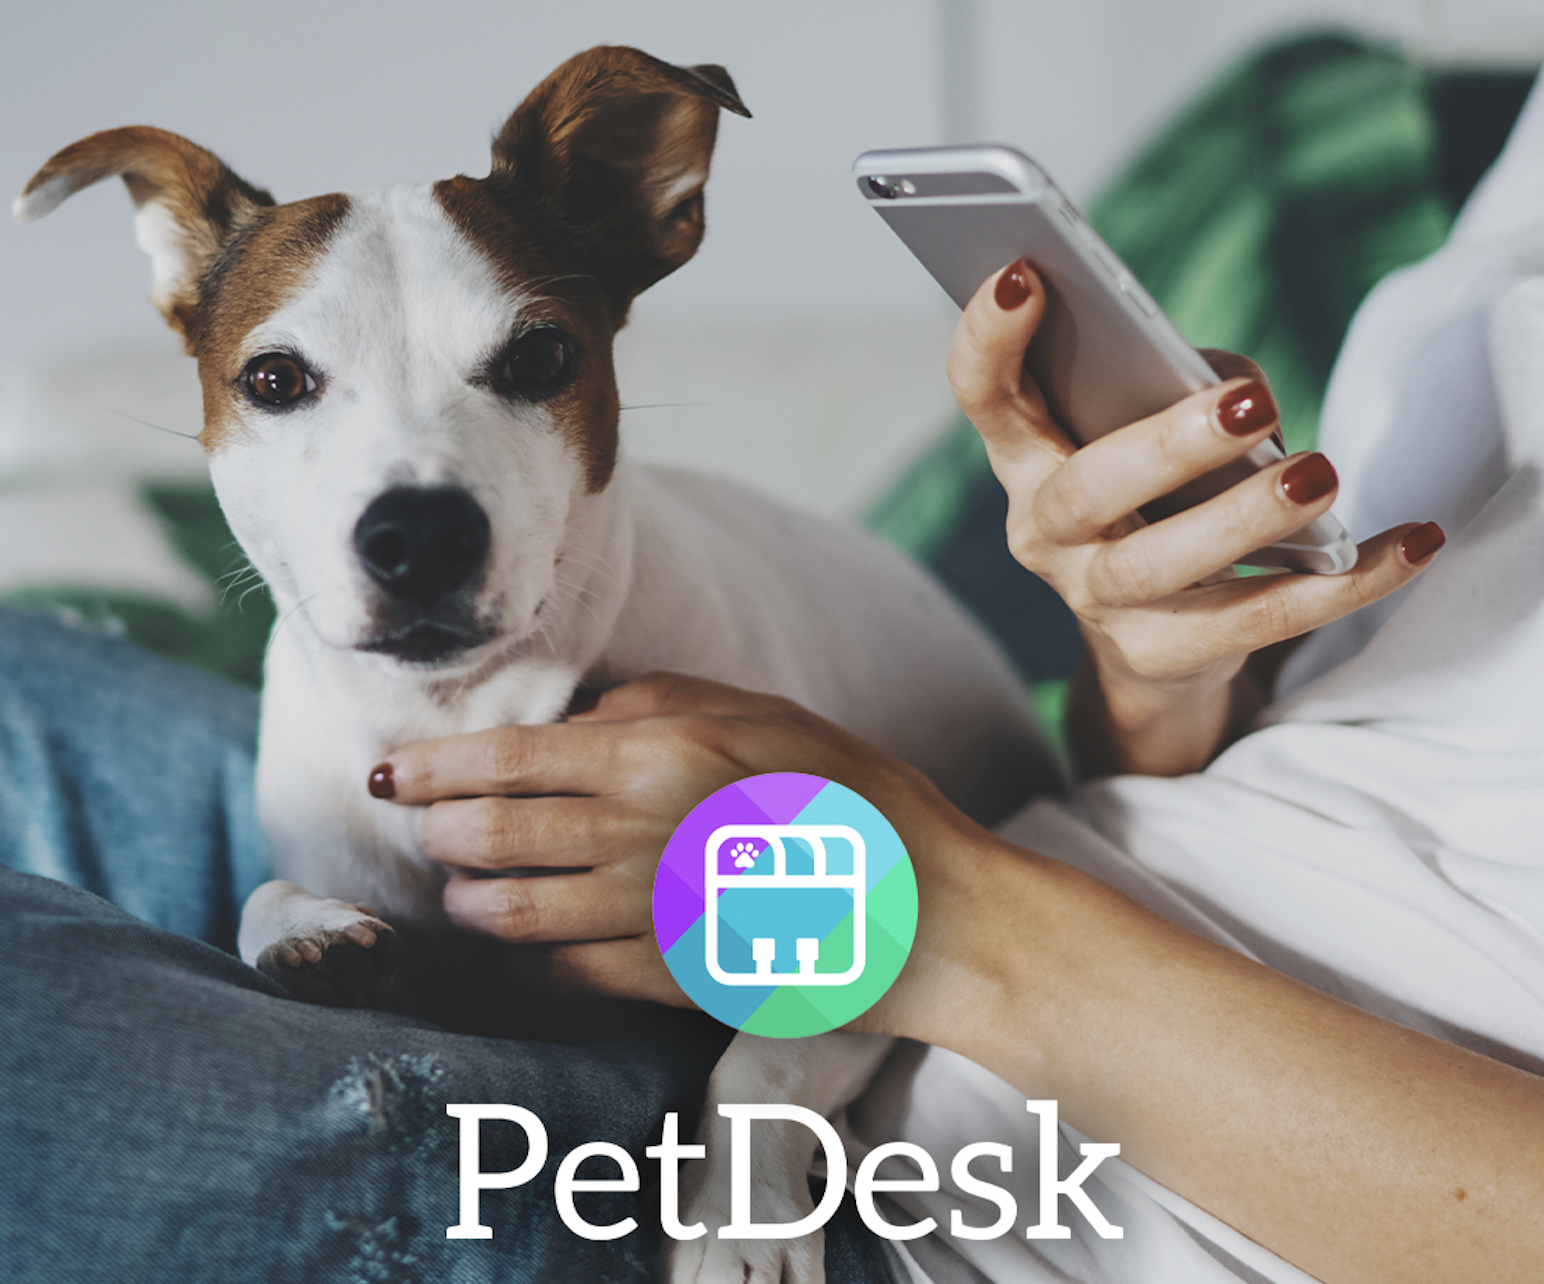 Two Rivers Pet Hospital - pet desk app